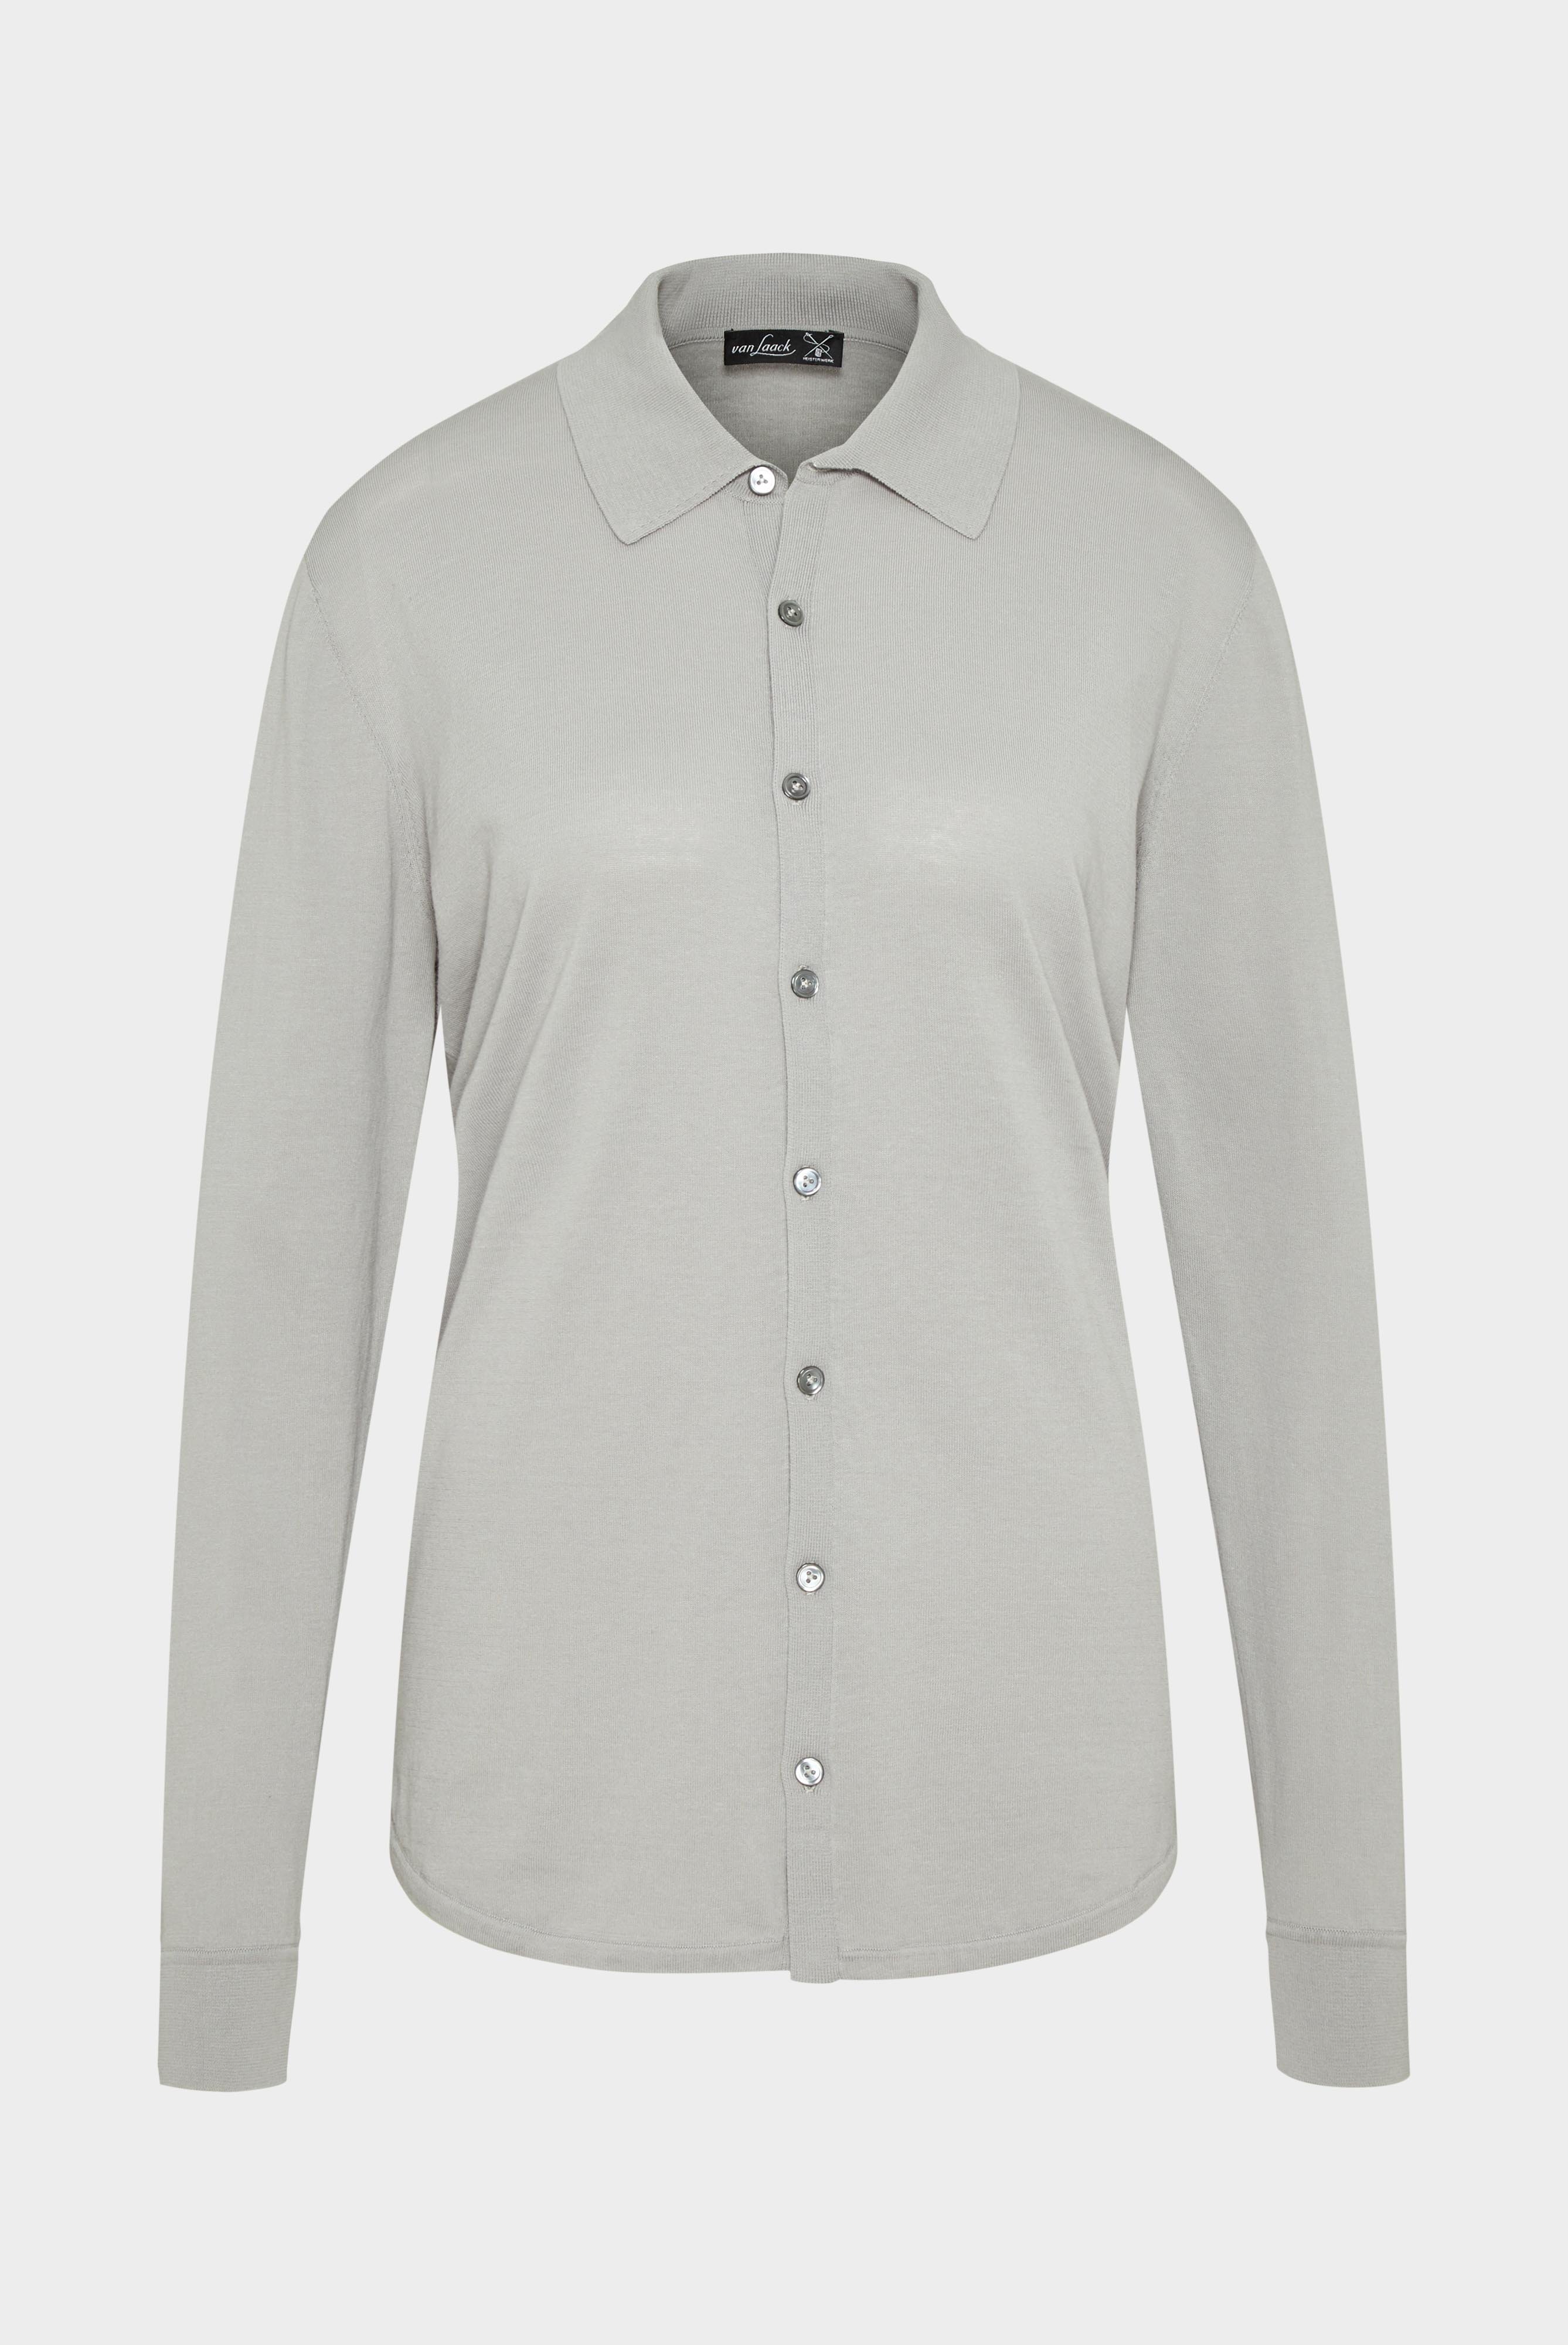 Bügelleichte Hemden+Strick Hemd aus Air Cotton+82.8611..S00174.050.S